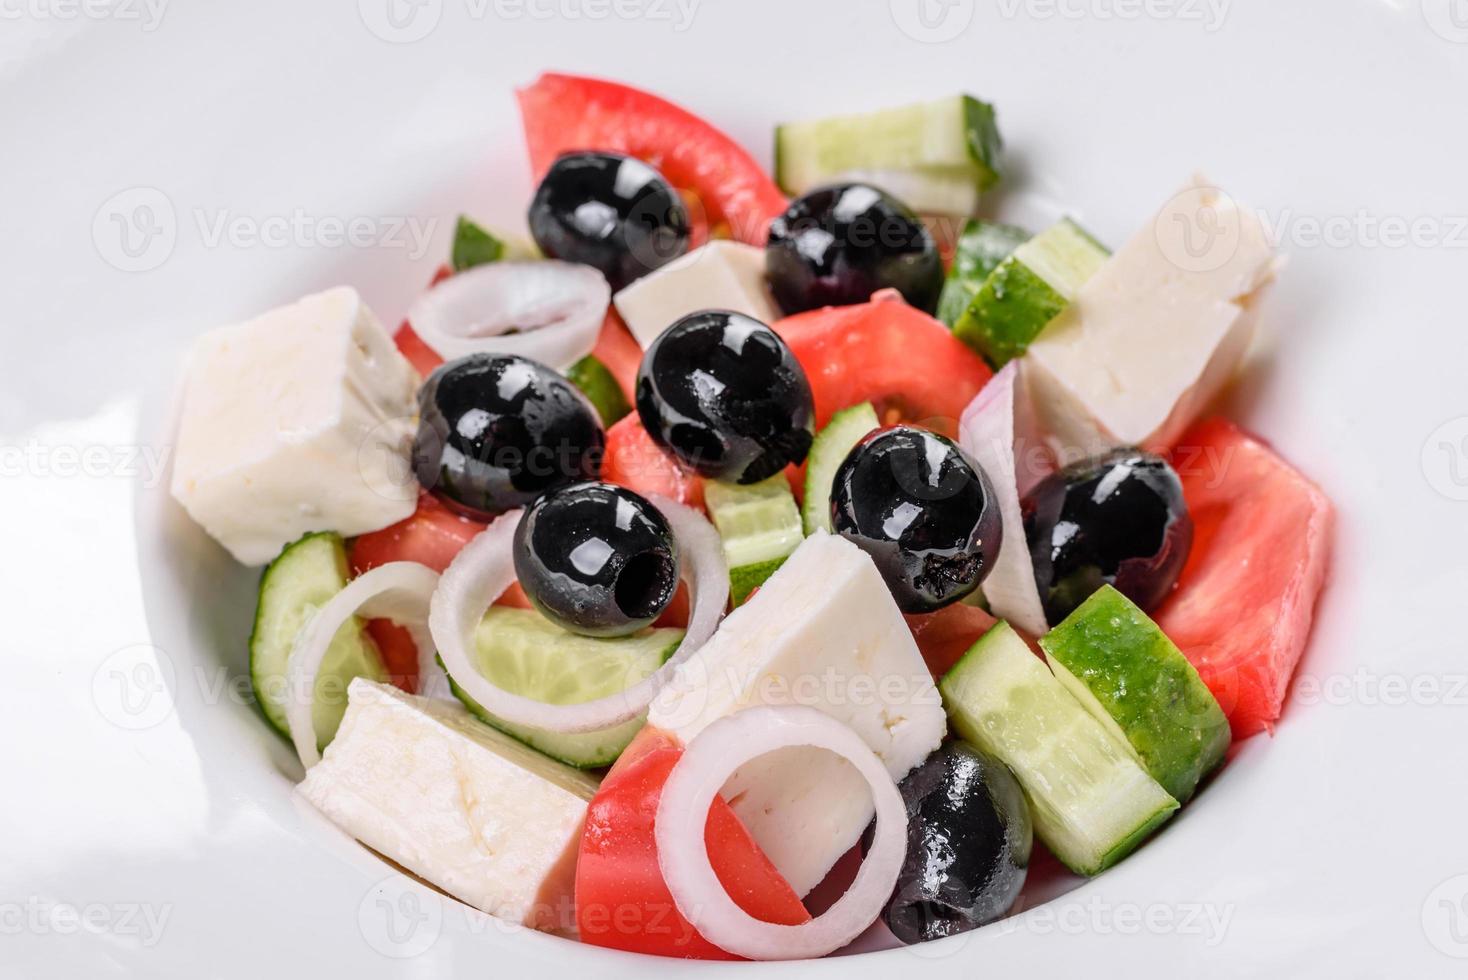 deliciosa ensalada griega fresca con tomate, pepino, cebolla y aceitunas con aceite de oliva foto